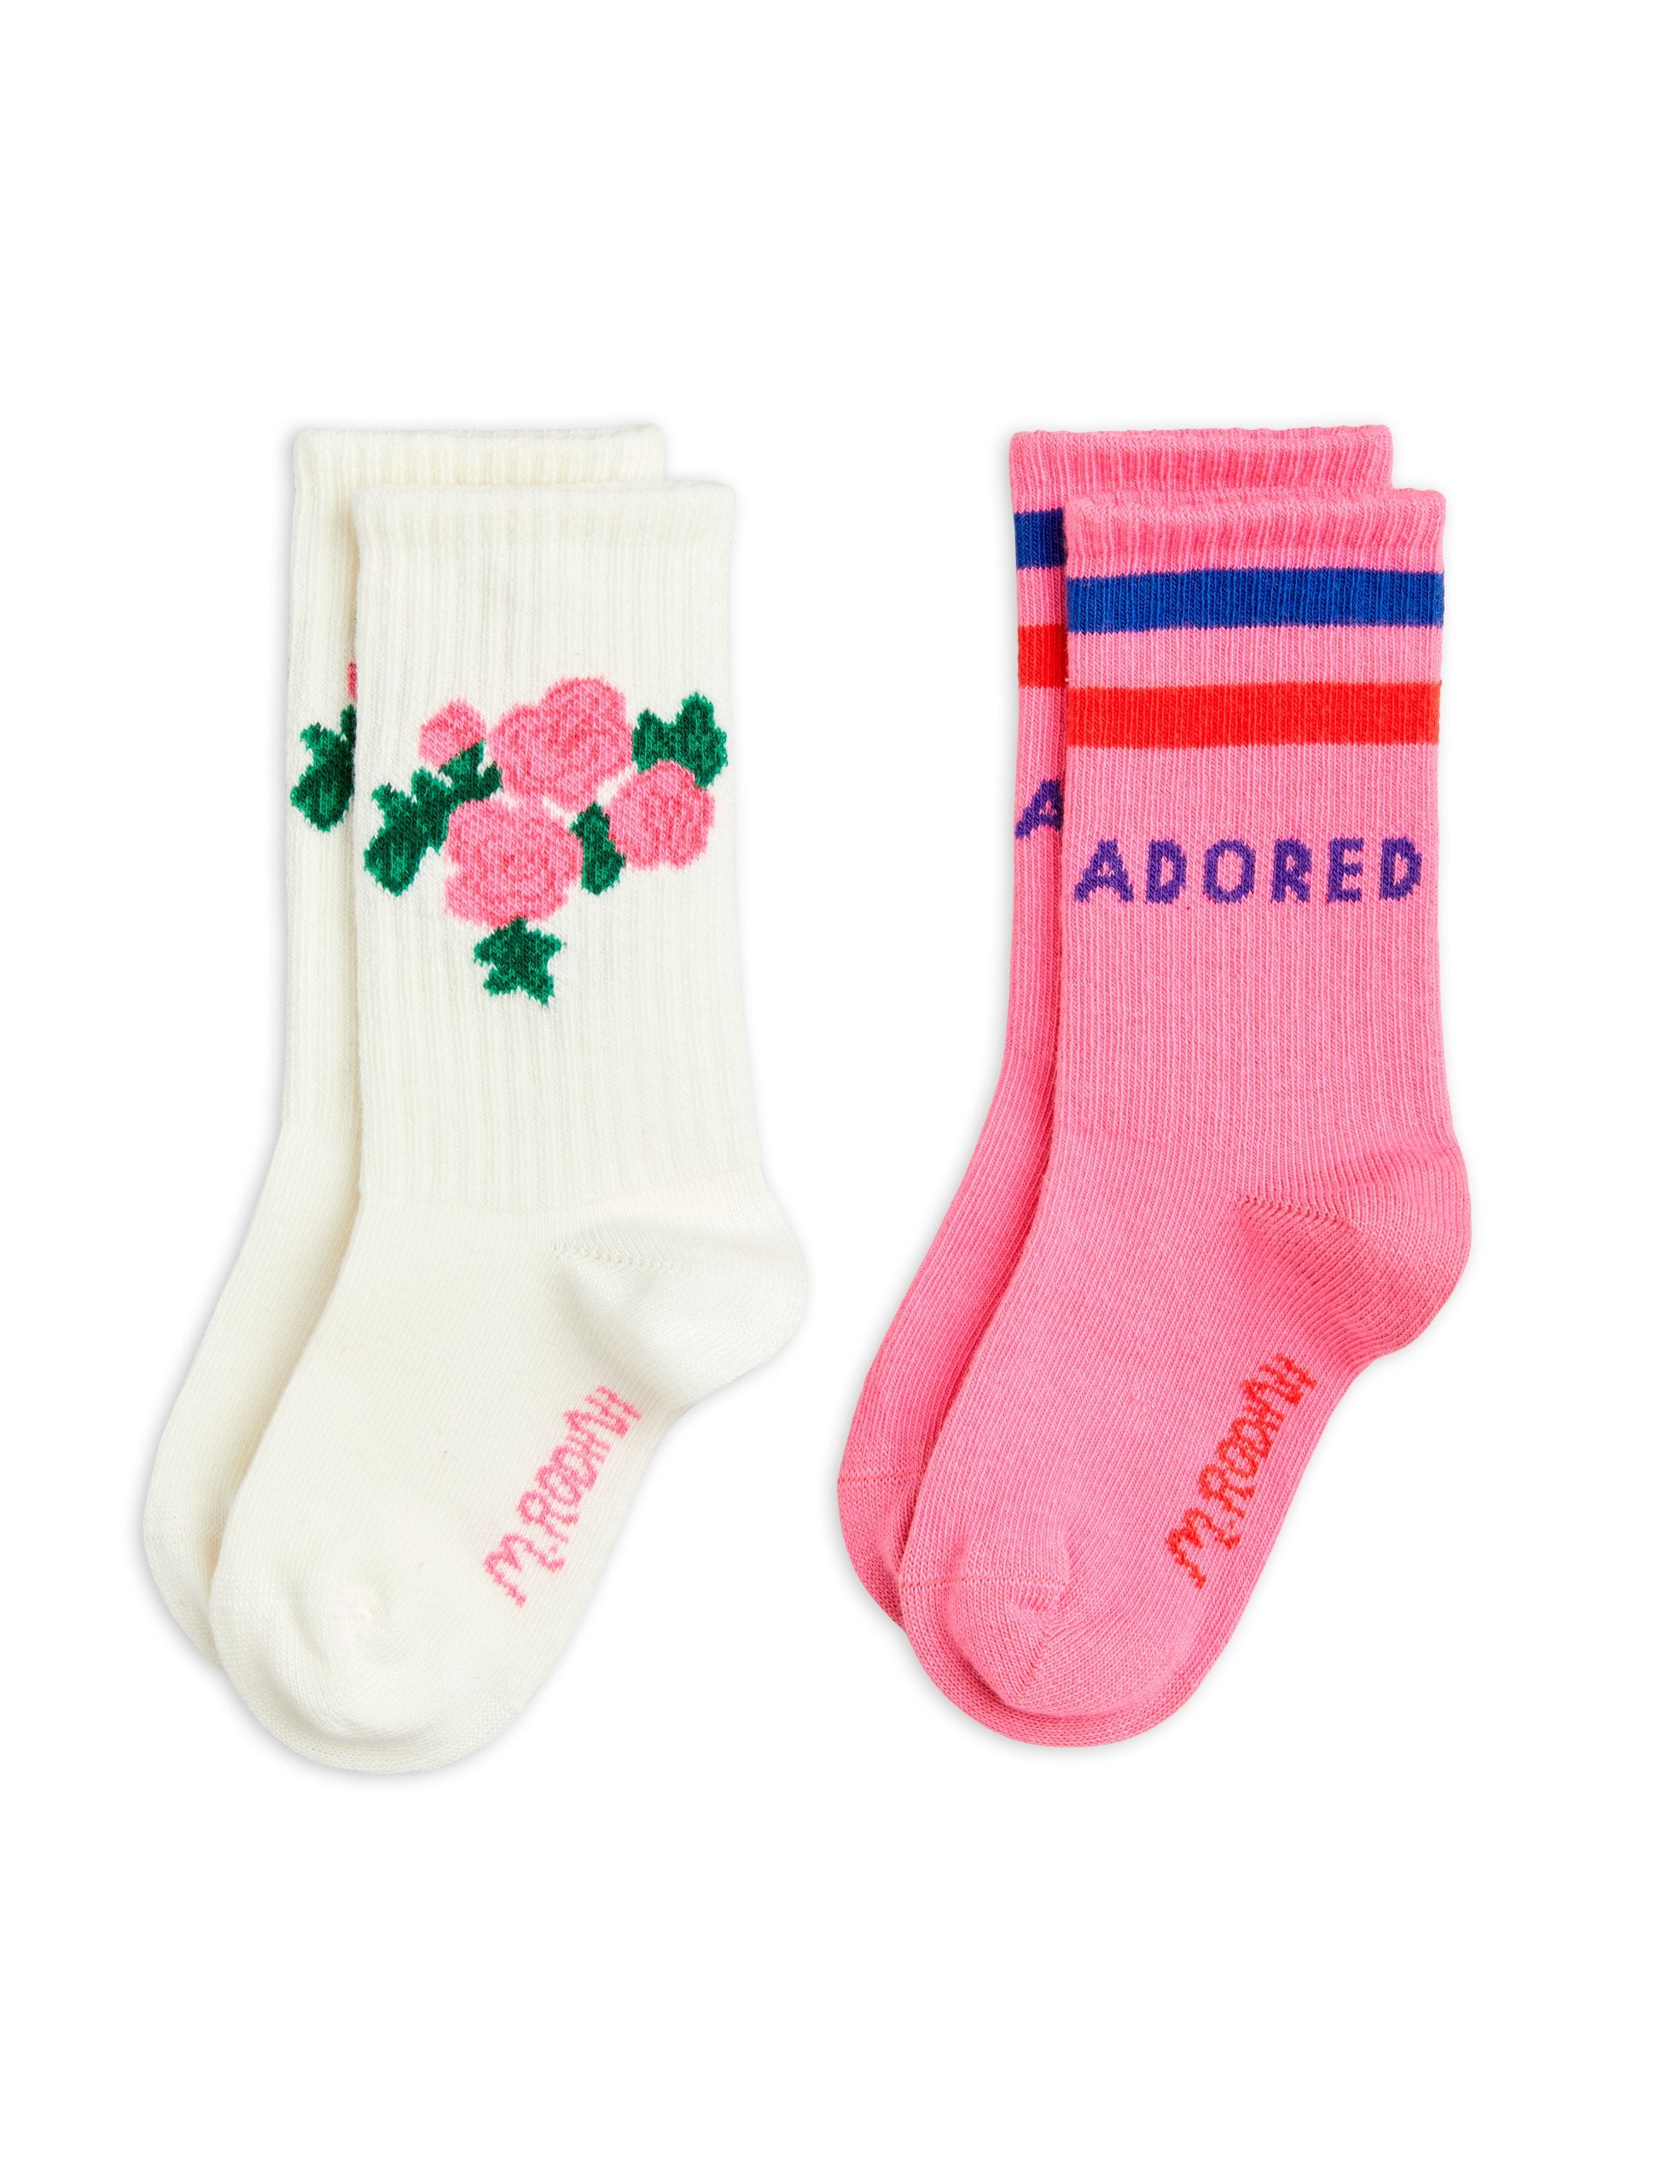 Roses 2-pack socks